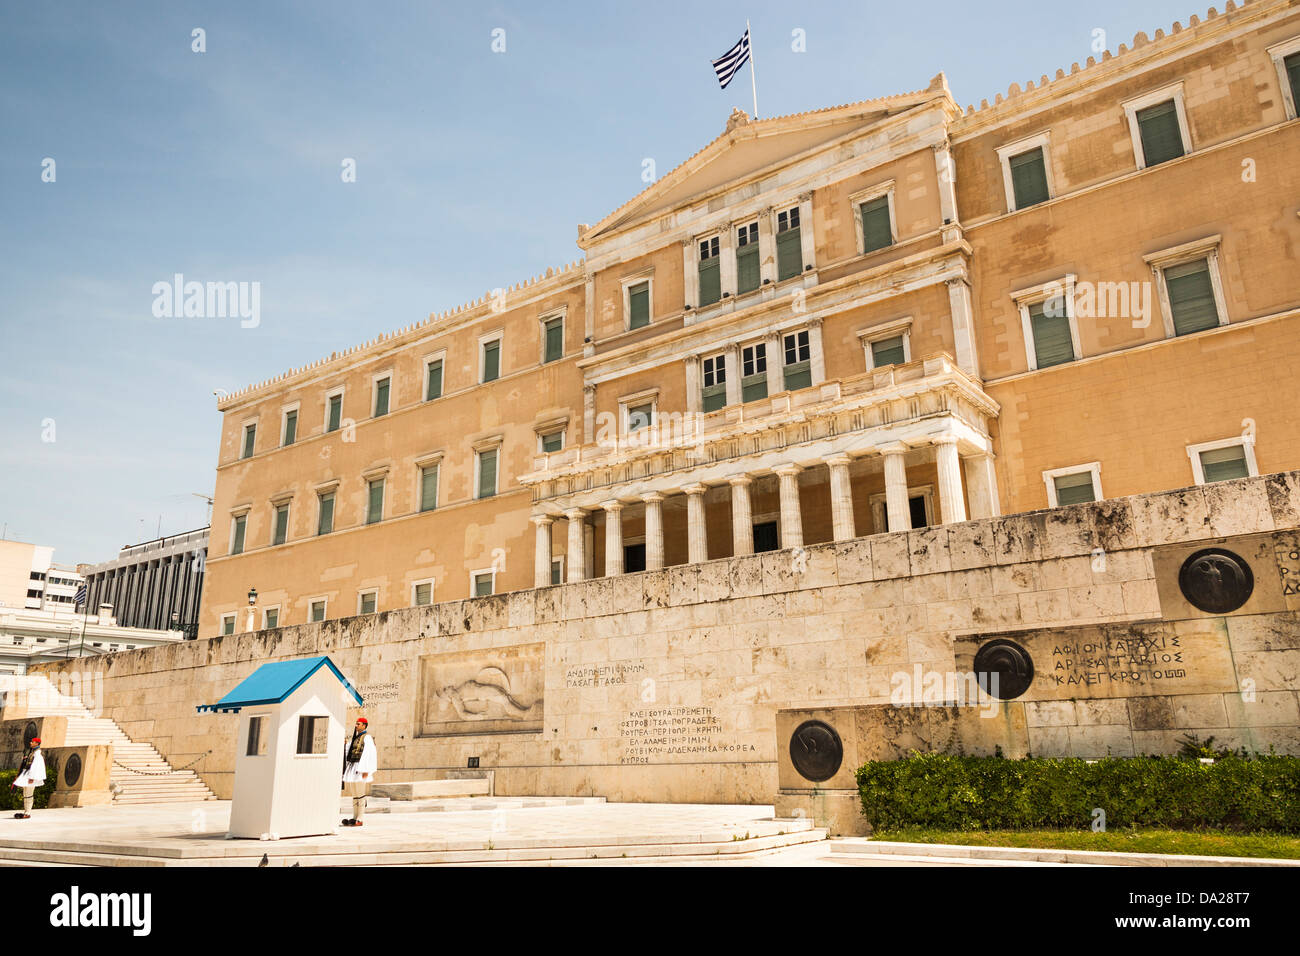 Das nationale Parlamentsgebäude und Grab des unbekannten Soldaten, Syntagma-Platz, Athen, Griechenland Stockfoto